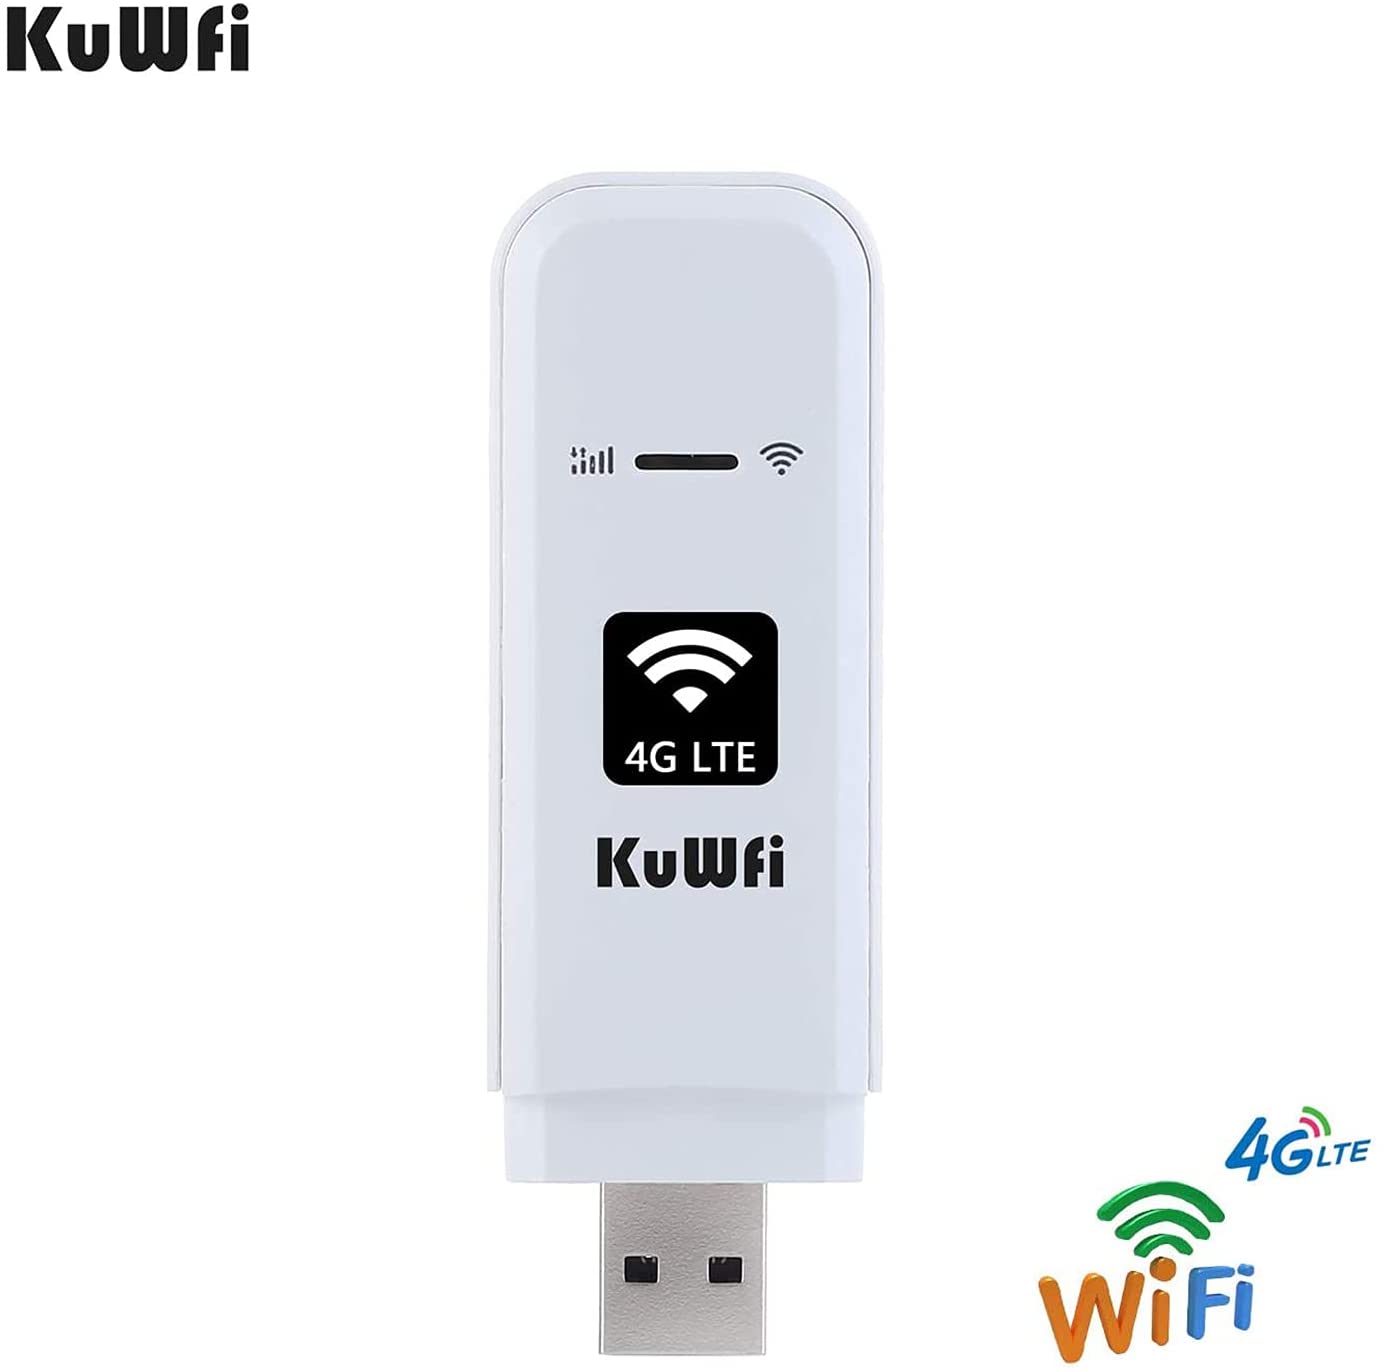 3G de la red de punto de conexión USB de LTE con tarjeta SIM Soporte FDD LTE B1/B3/B7/B8/B20 4G Dongle,KuWFi Hotspot de la red inalámbrica del enrutador de WiFi del coche Hotspot 4G 